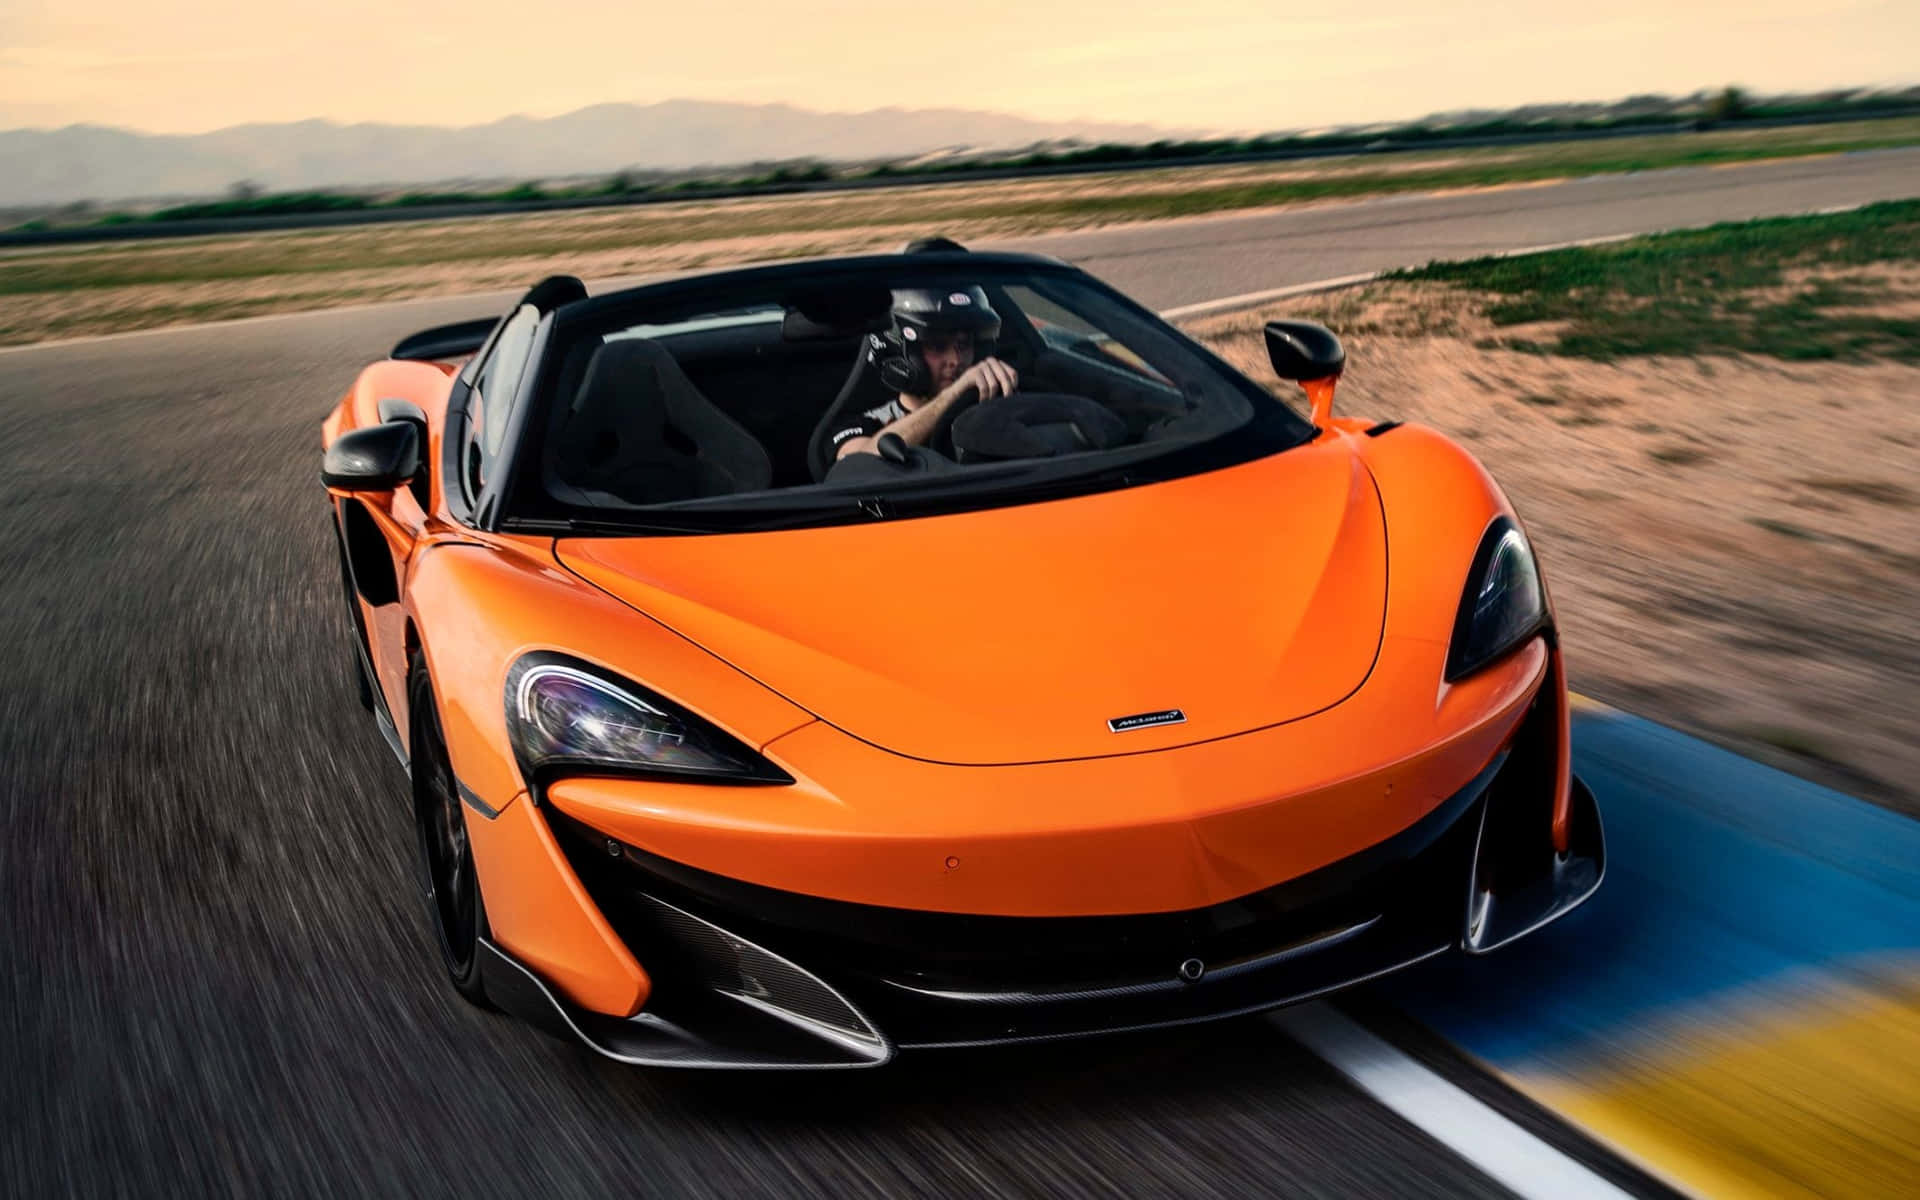 The Iconic McLaren Supercar